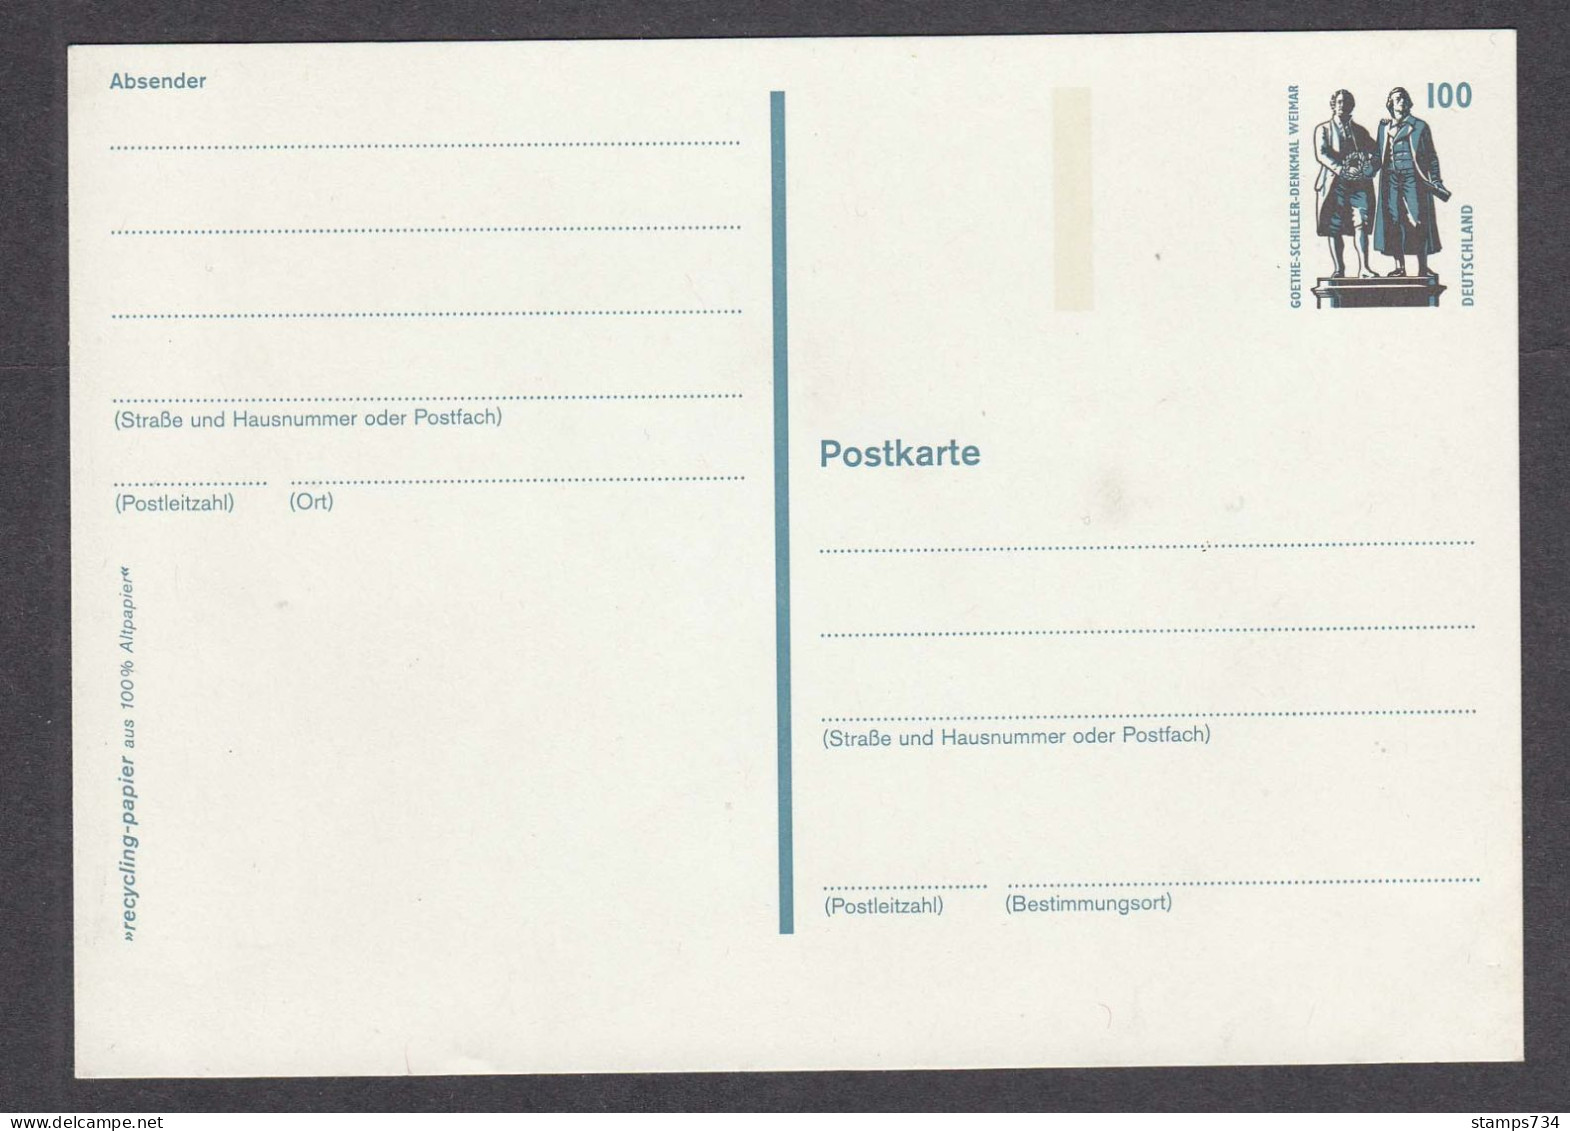 BRD 12/1997 - 100 Pf., Goethe-Schiller Monument, Weimar, Post. Stationery, Mint - Postkarten - Ungebraucht